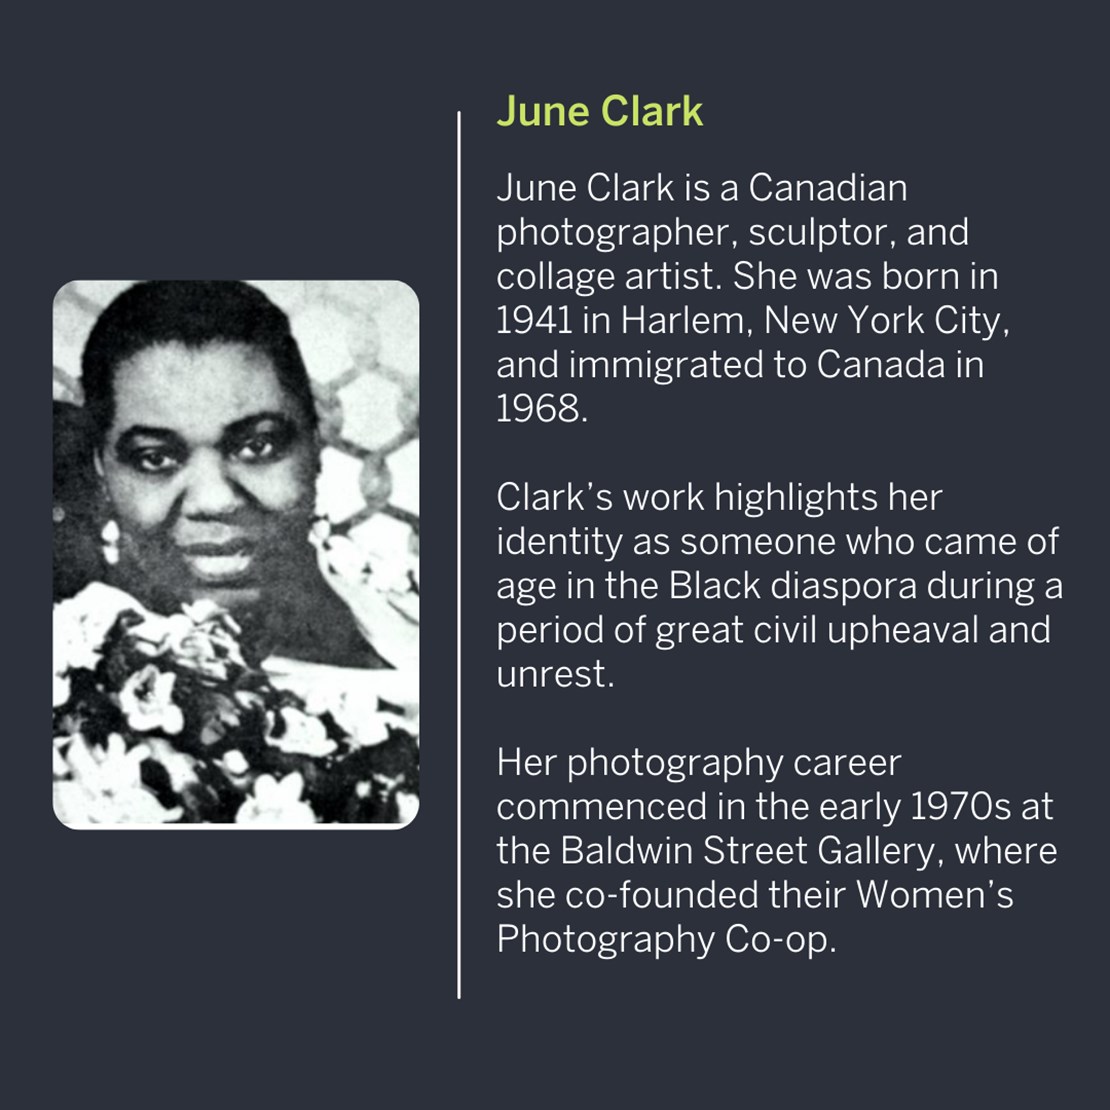 June Clark